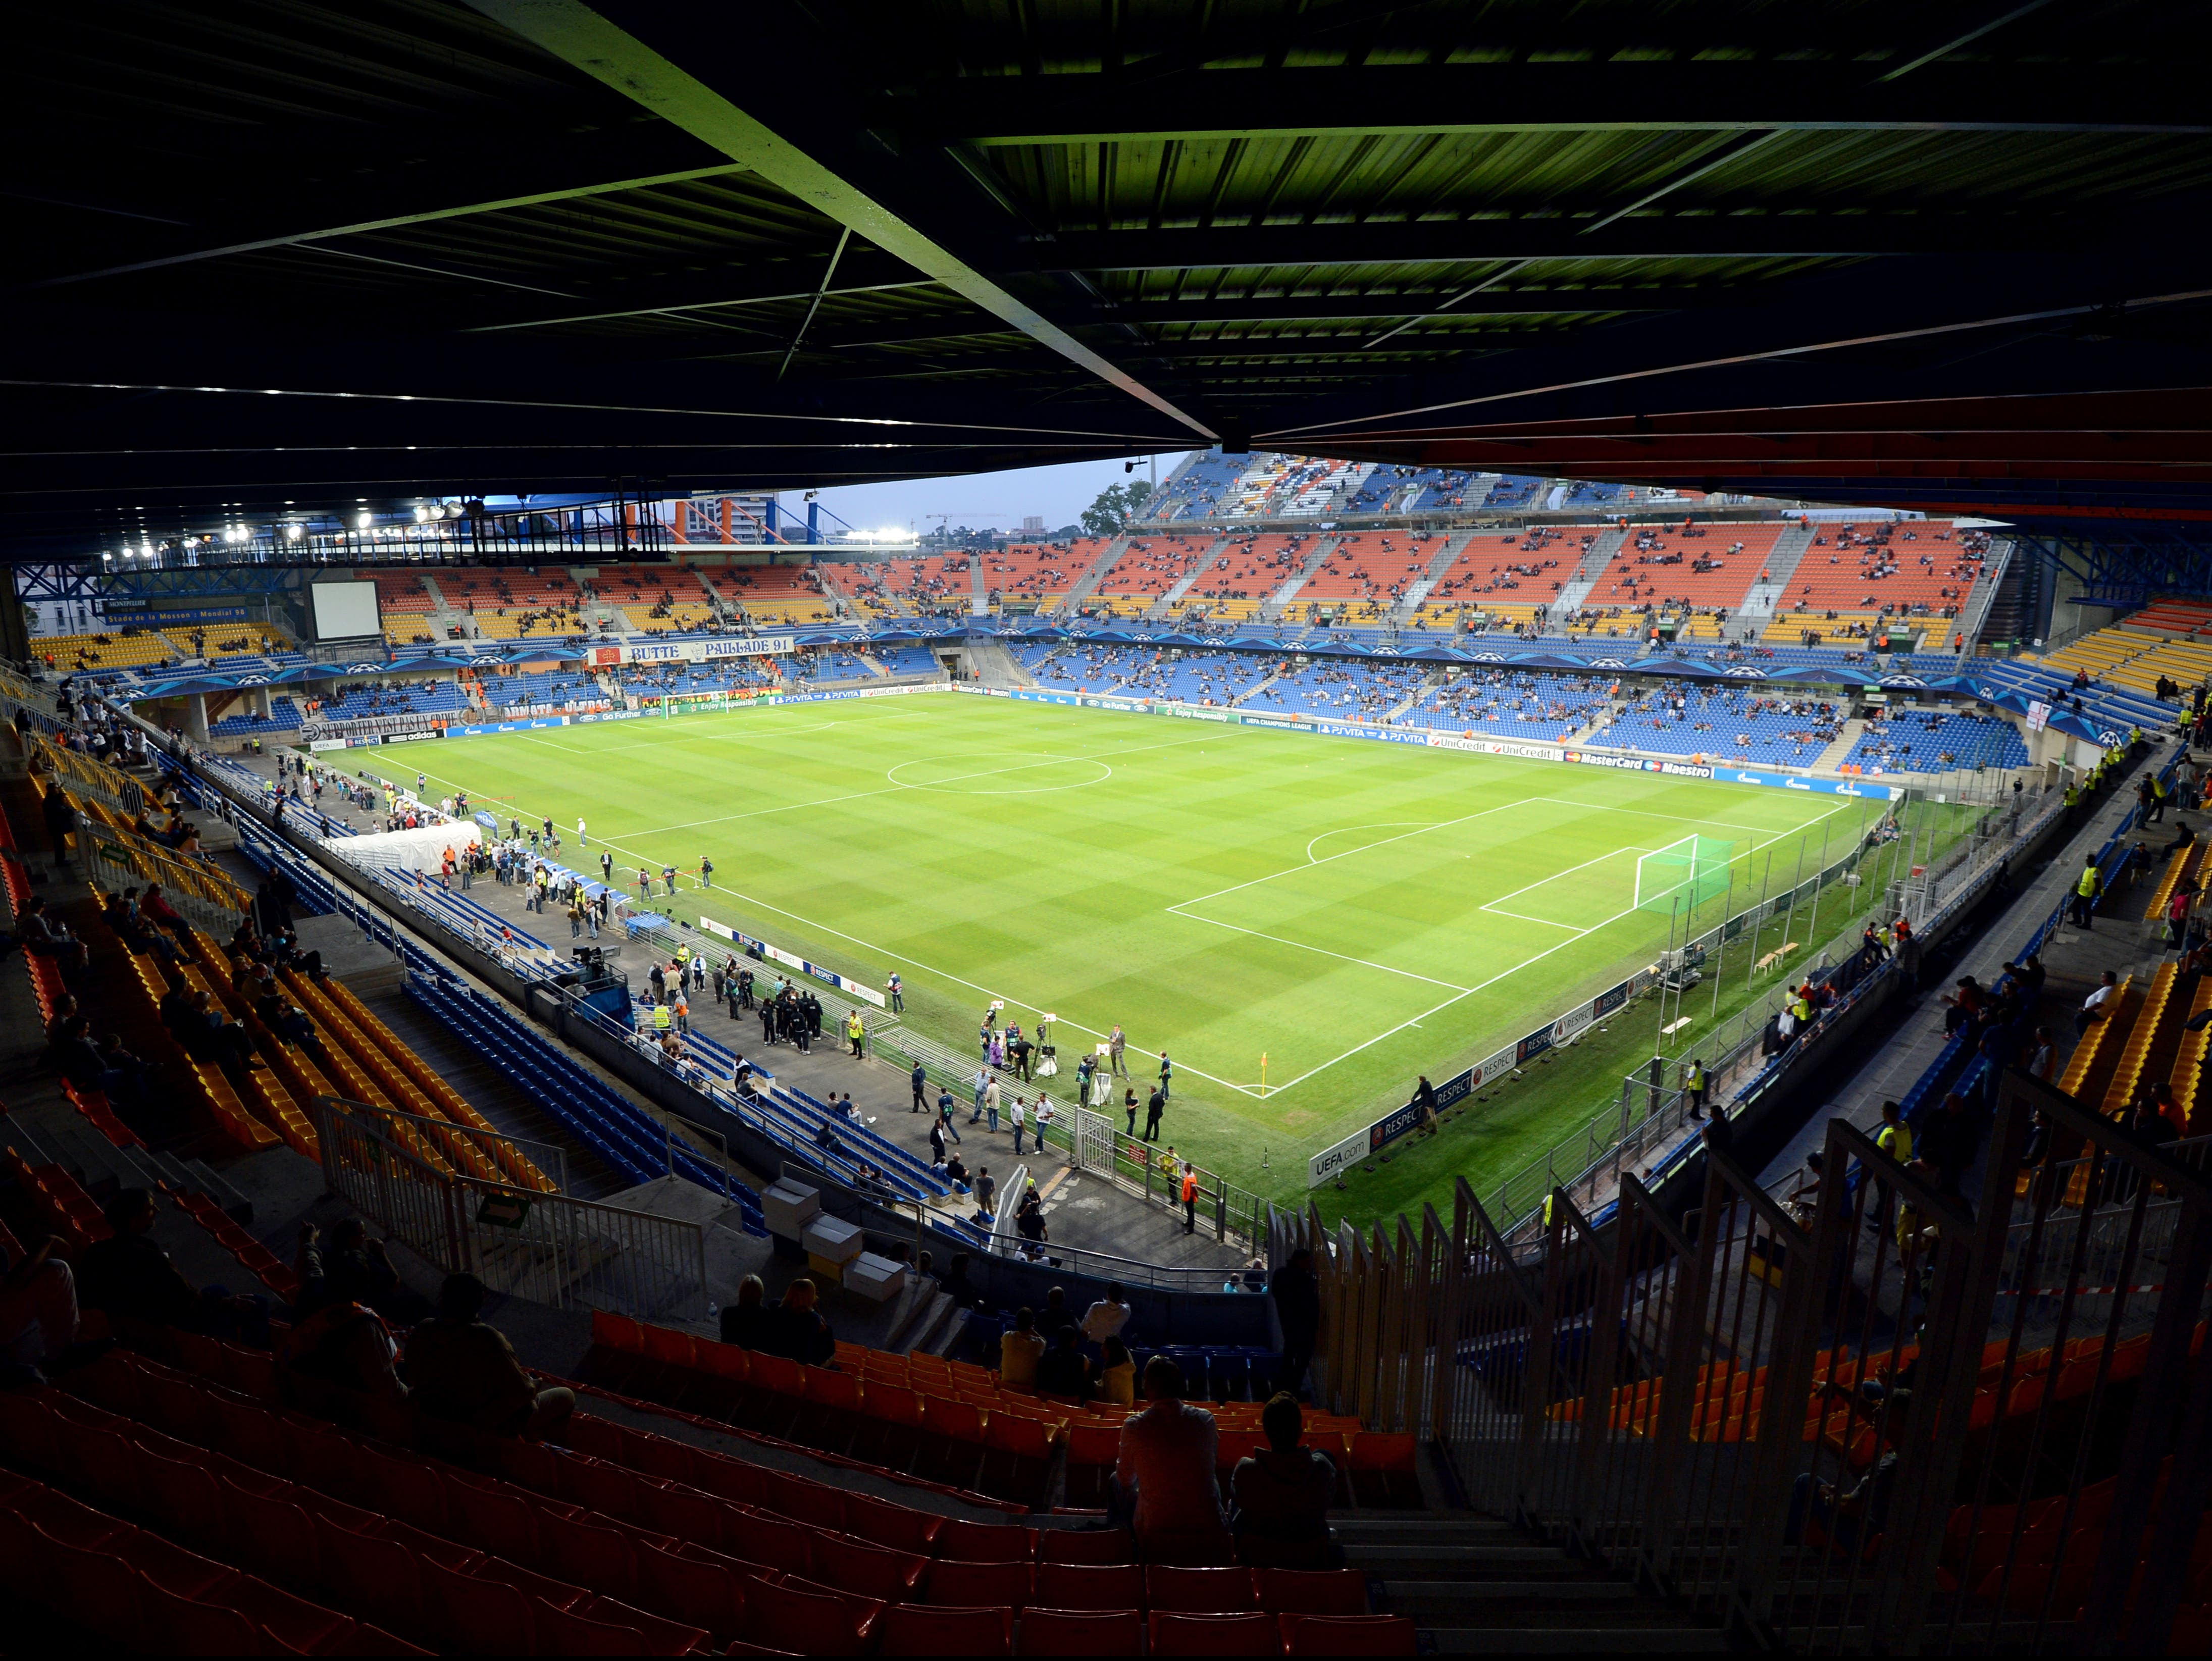 A general view of the Stade de la Mosson